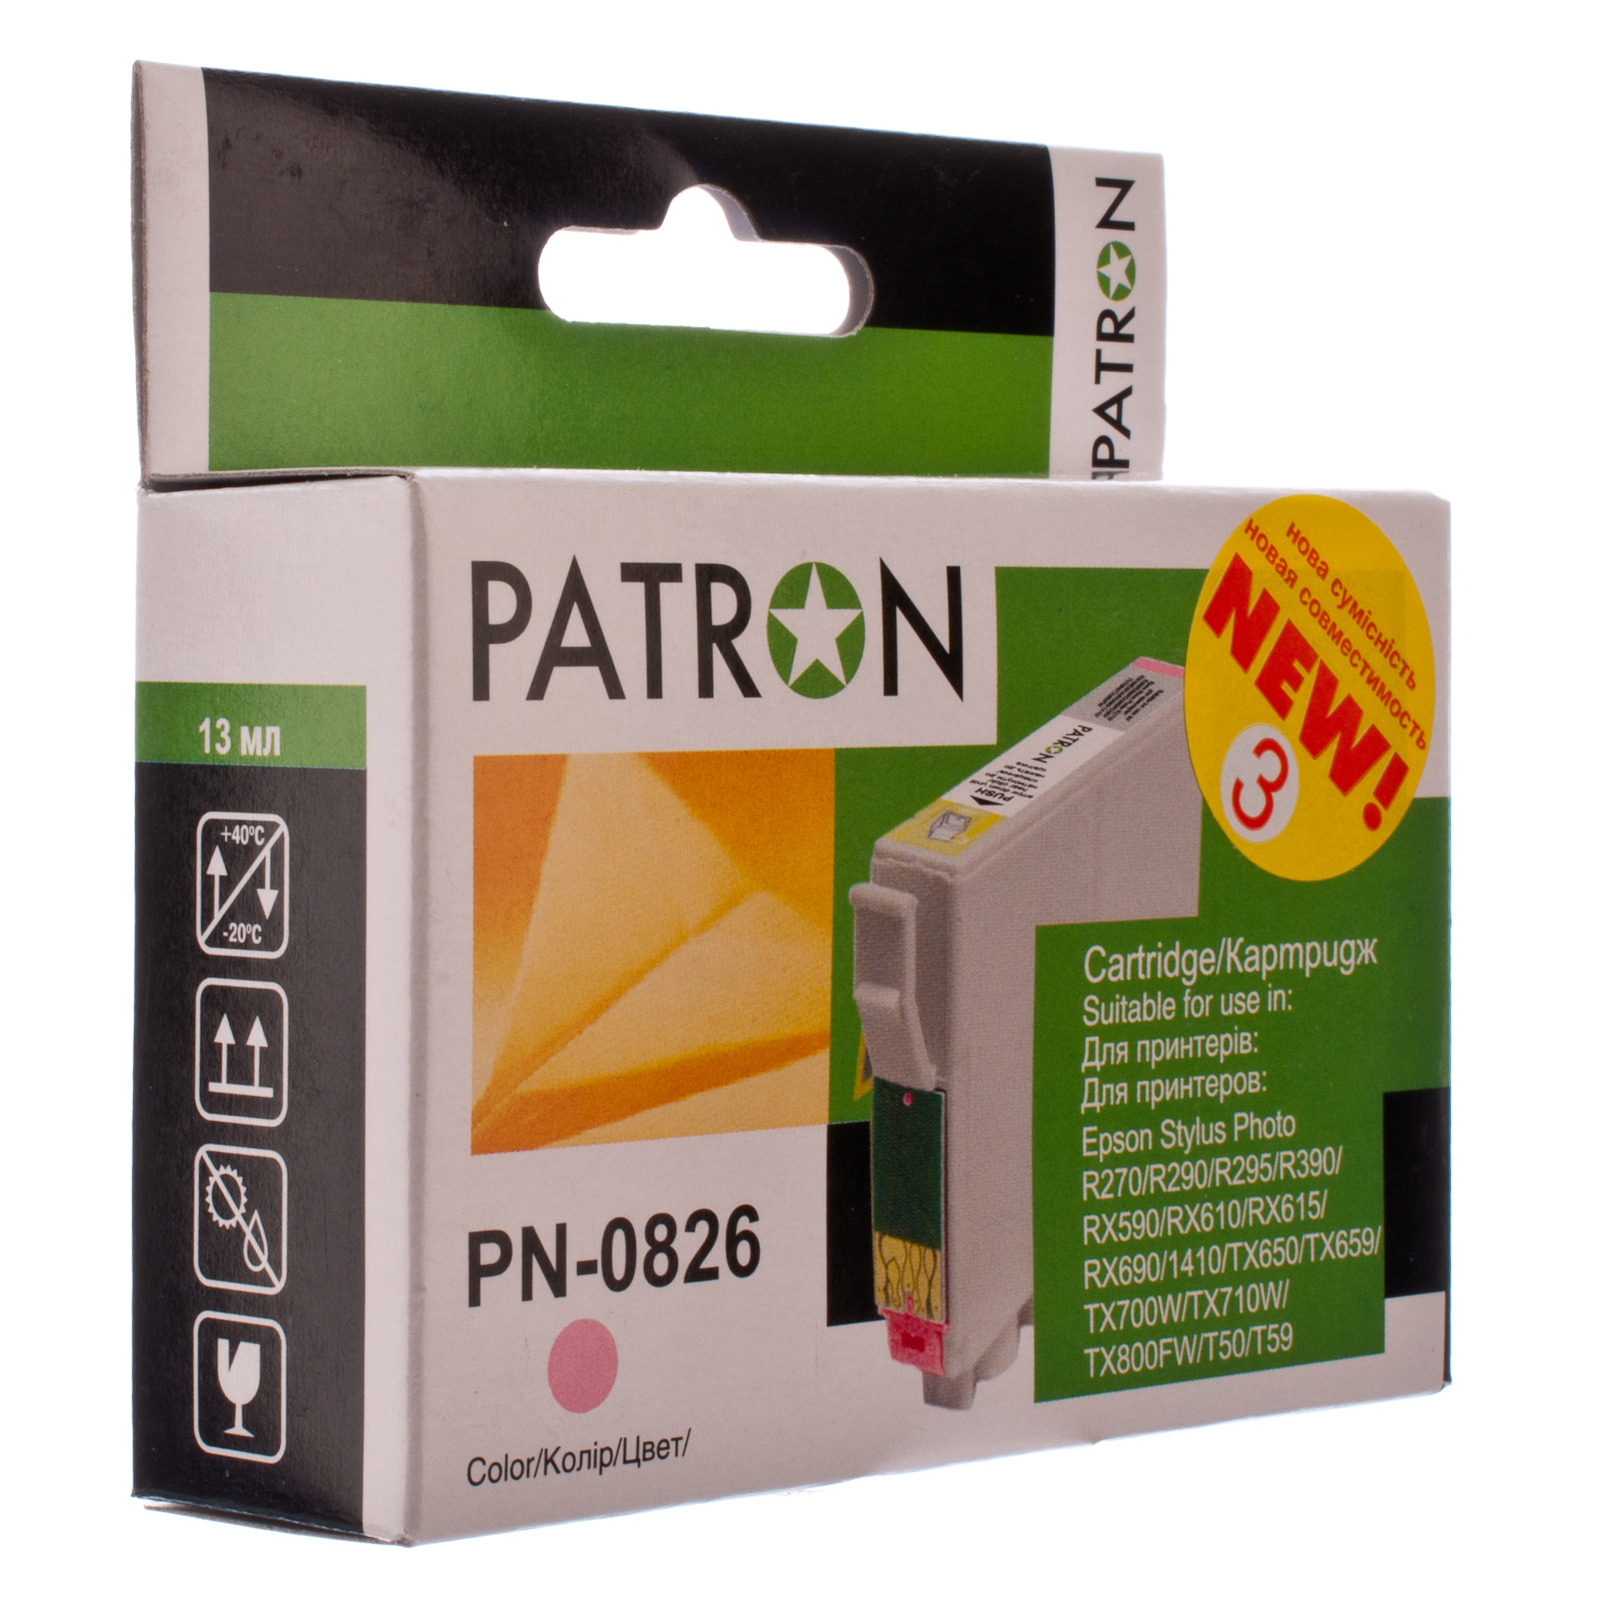 Картридж Patron для EPSON R270/290/390/RX590 YELLOW (PN-0824) (CI-EPS-T08144-Y3-PN)